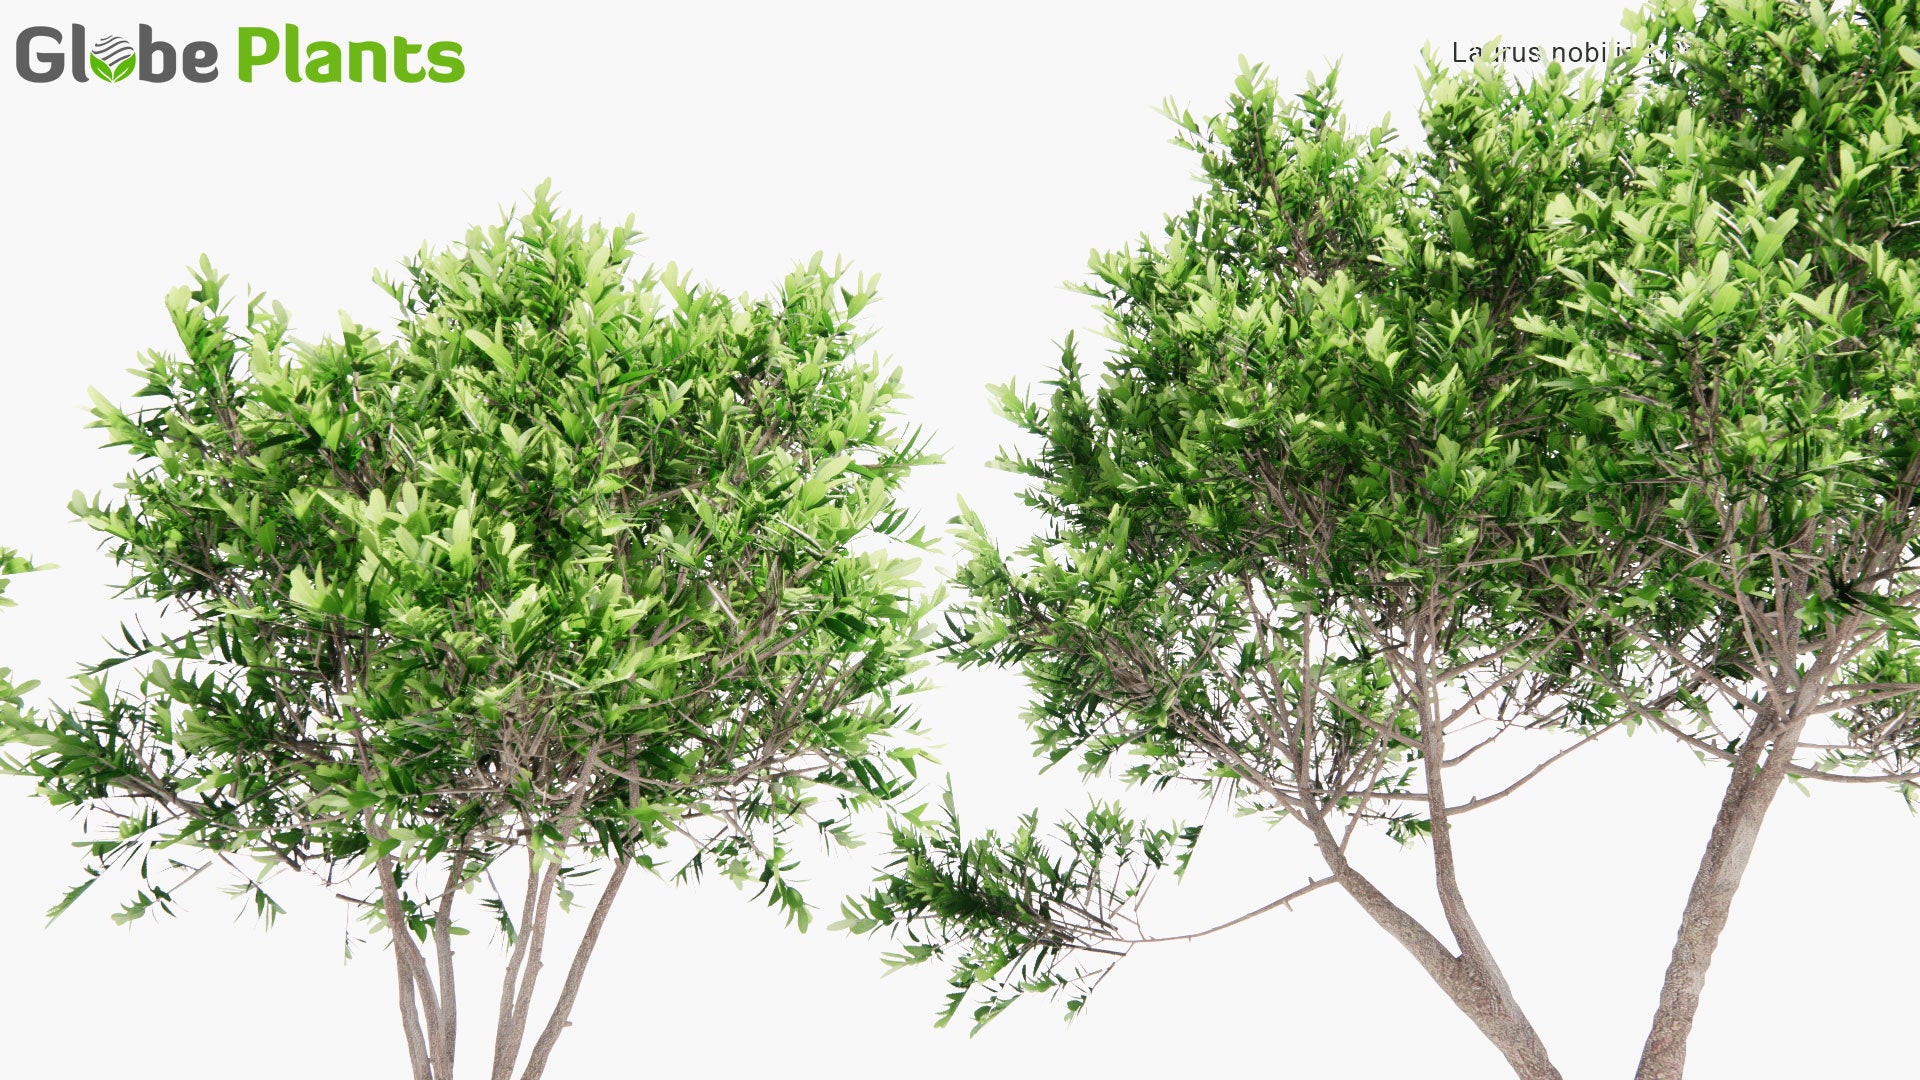 Low Poly Laurus Nobilis - Bay Laurel, Bay Tree (3D Model)